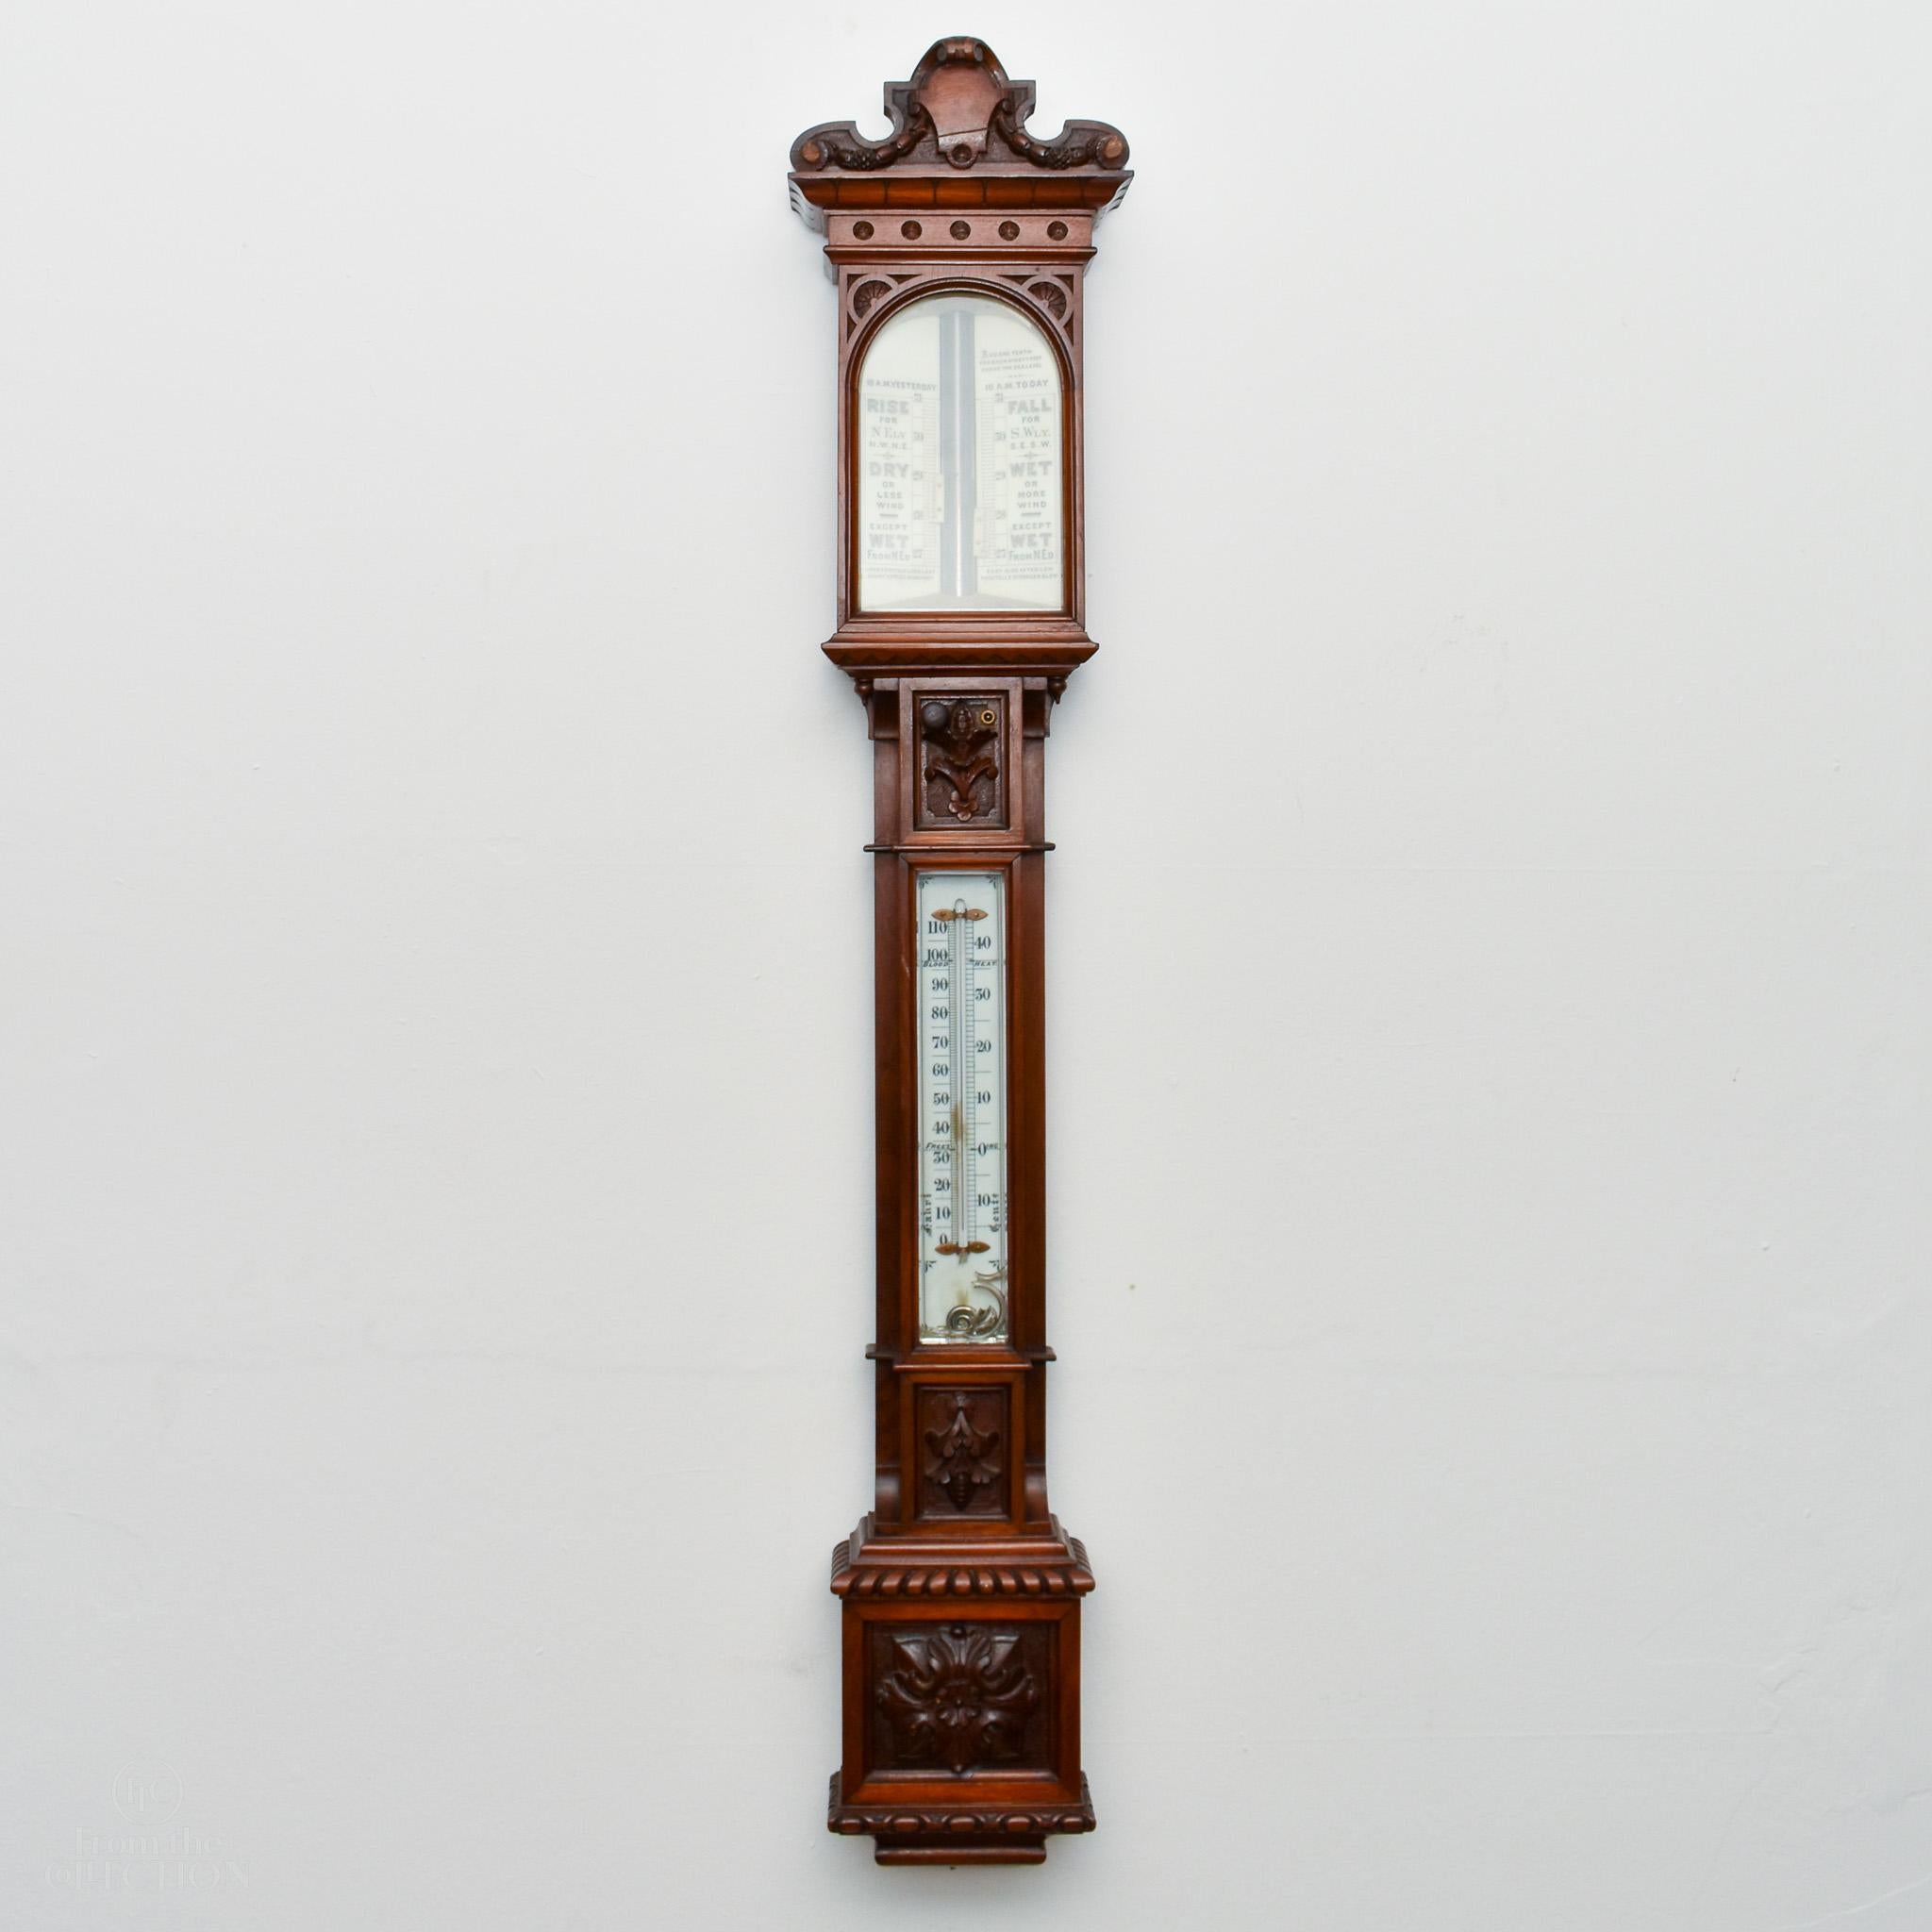 Viktorianisches Stabbarometer um 1880 Fein geschnitzt und mit Intarsien aus Satinholz verziert. Möglicherweise schottische Herkunft.